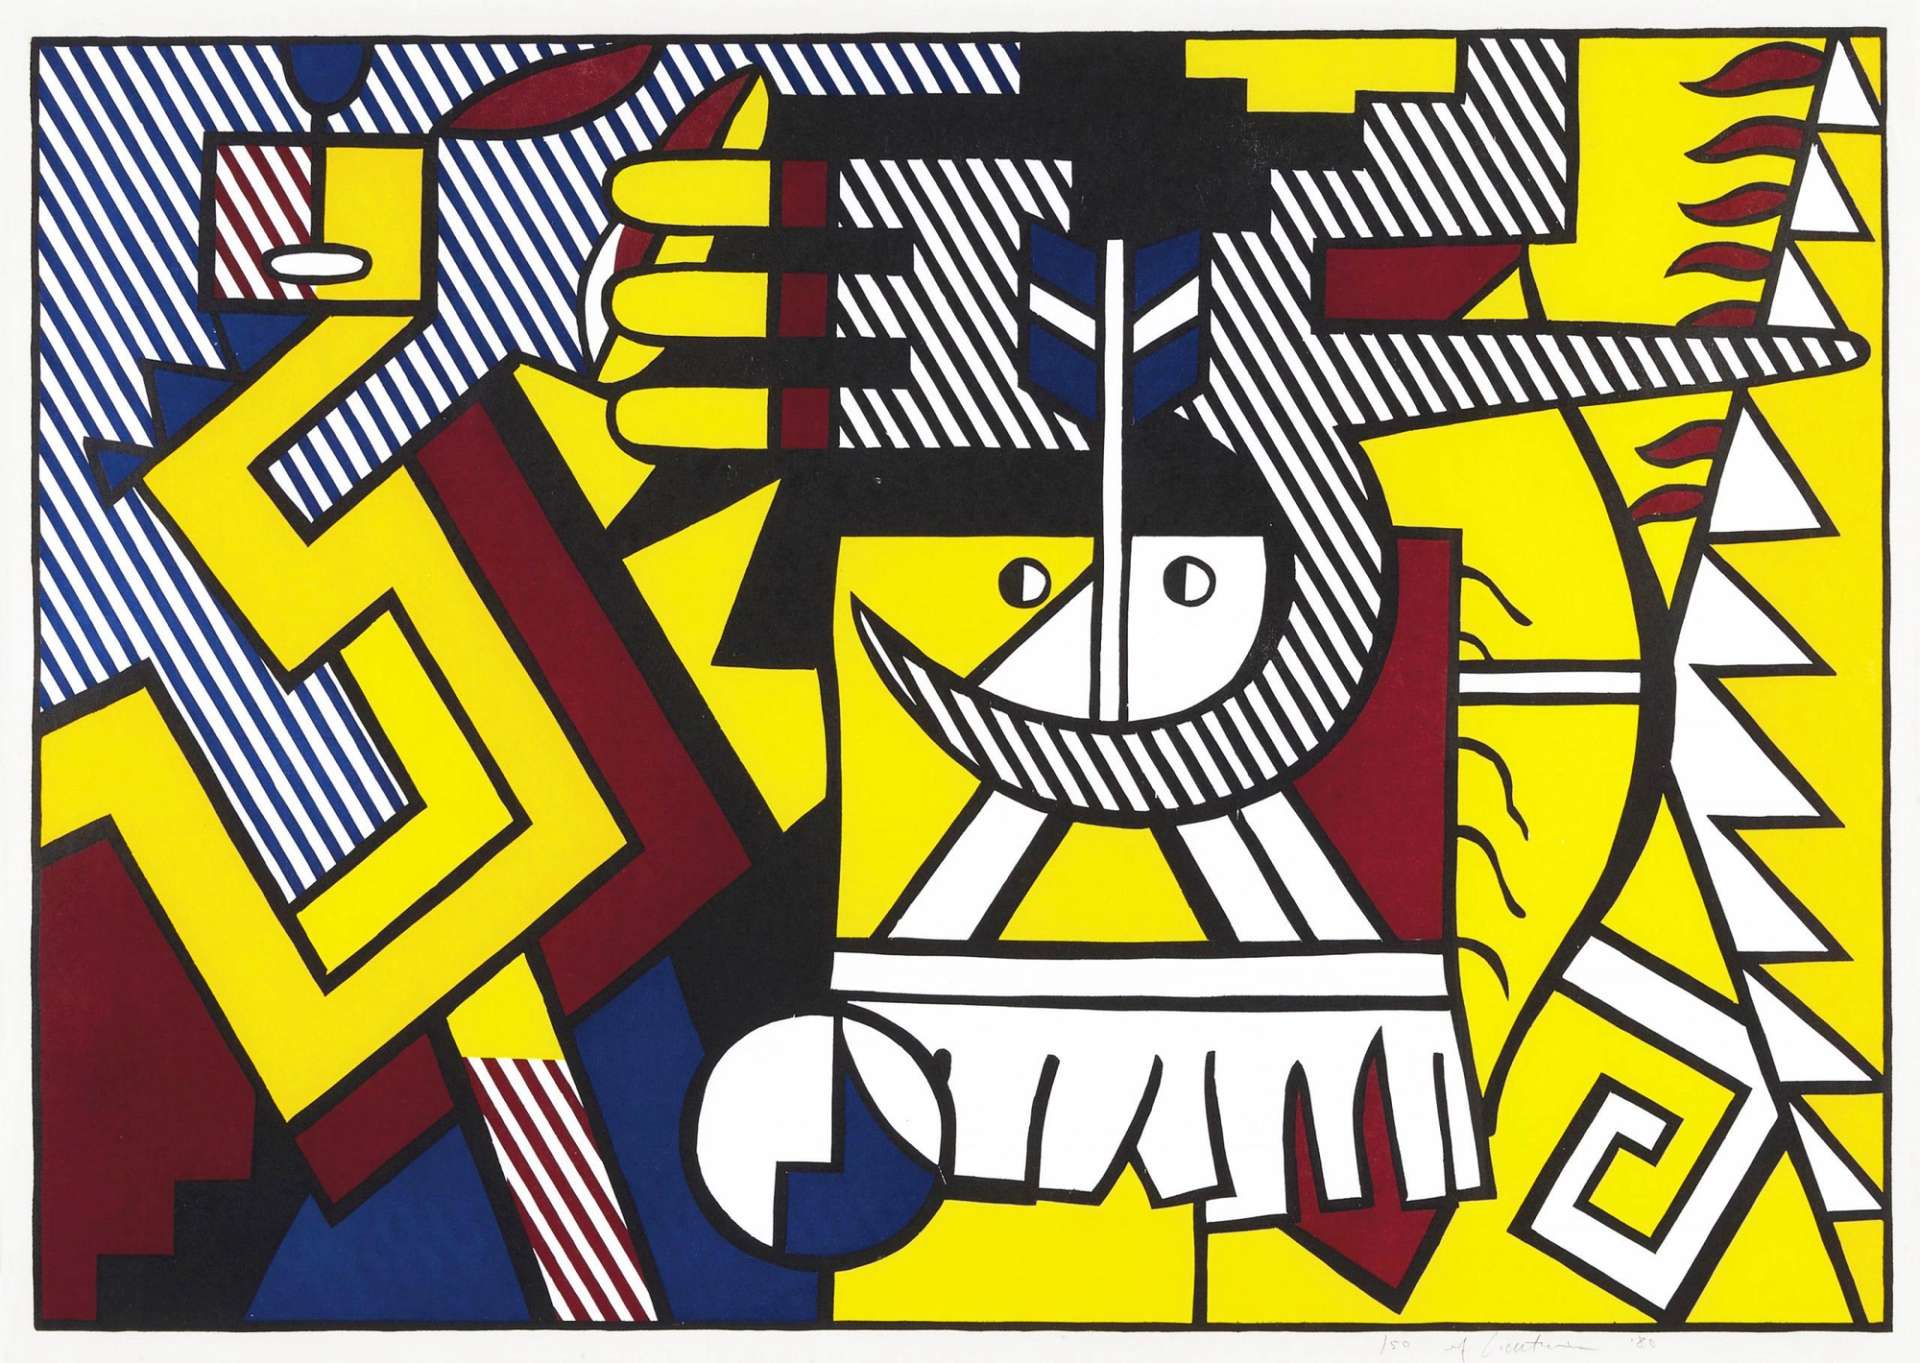 American Indian Theme VI - Signed Print by Roy Lichtenstein 1980 - MyArtBroker